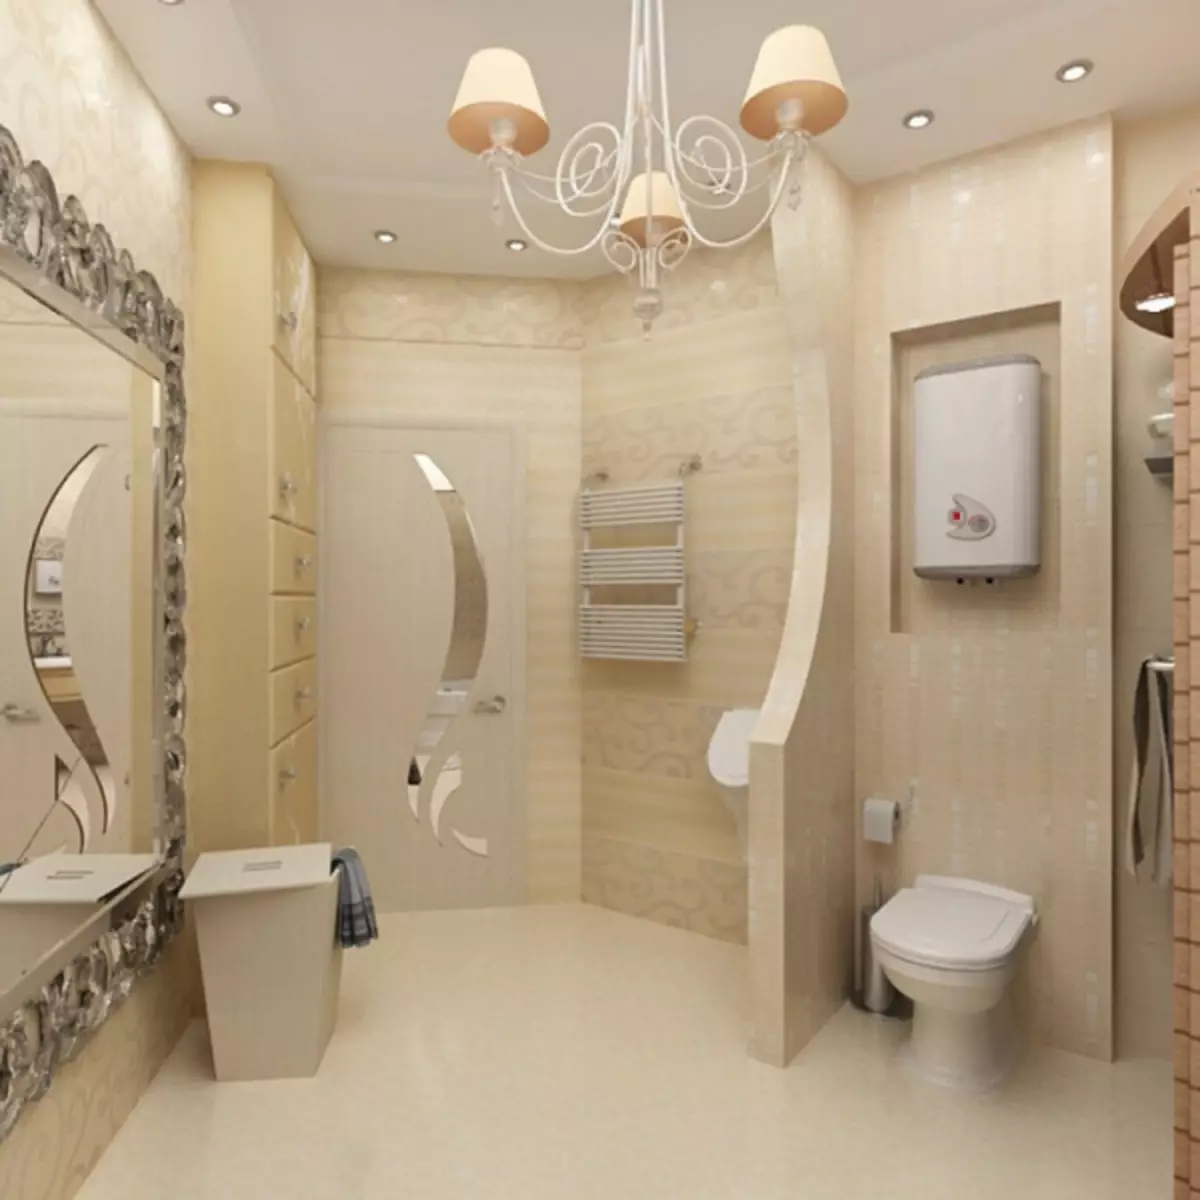 Vonios interjeras kartu su tualetu: kaip padaryti gražiai ir praktiškai mažoje erdvėje (38 nuotraukos)